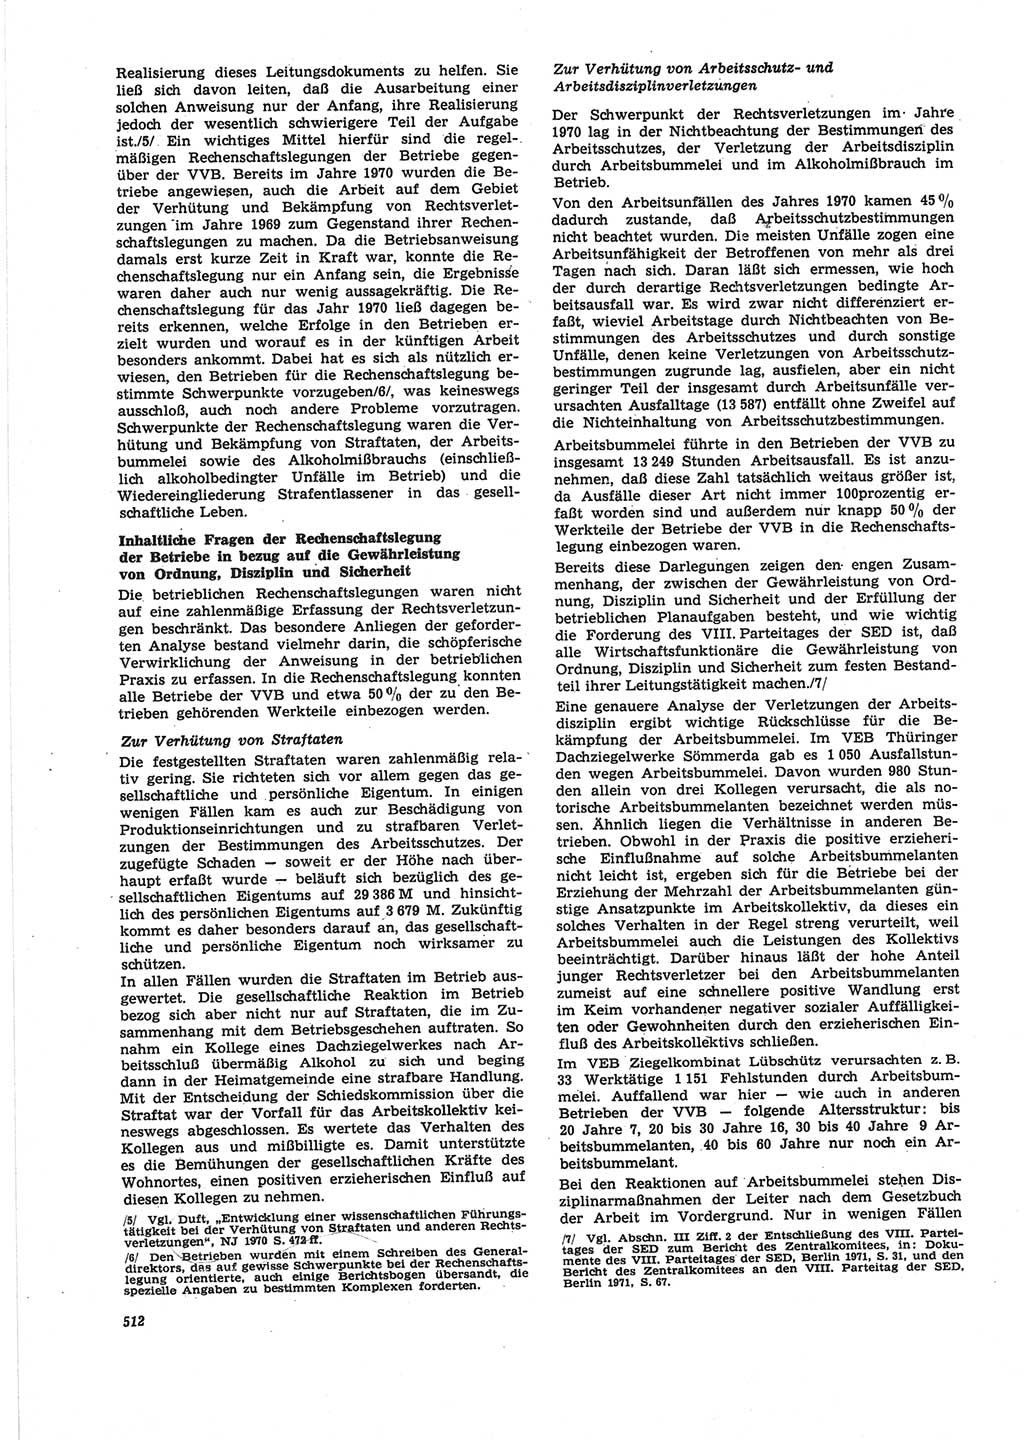 Neue Justiz (NJ), Zeitschrift für Recht und Rechtswissenschaft [Deutsche Demokratische Republik (DDR)], 25. Jahrgang 1971, Seite 512 (NJ DDR 1971, S. 512)